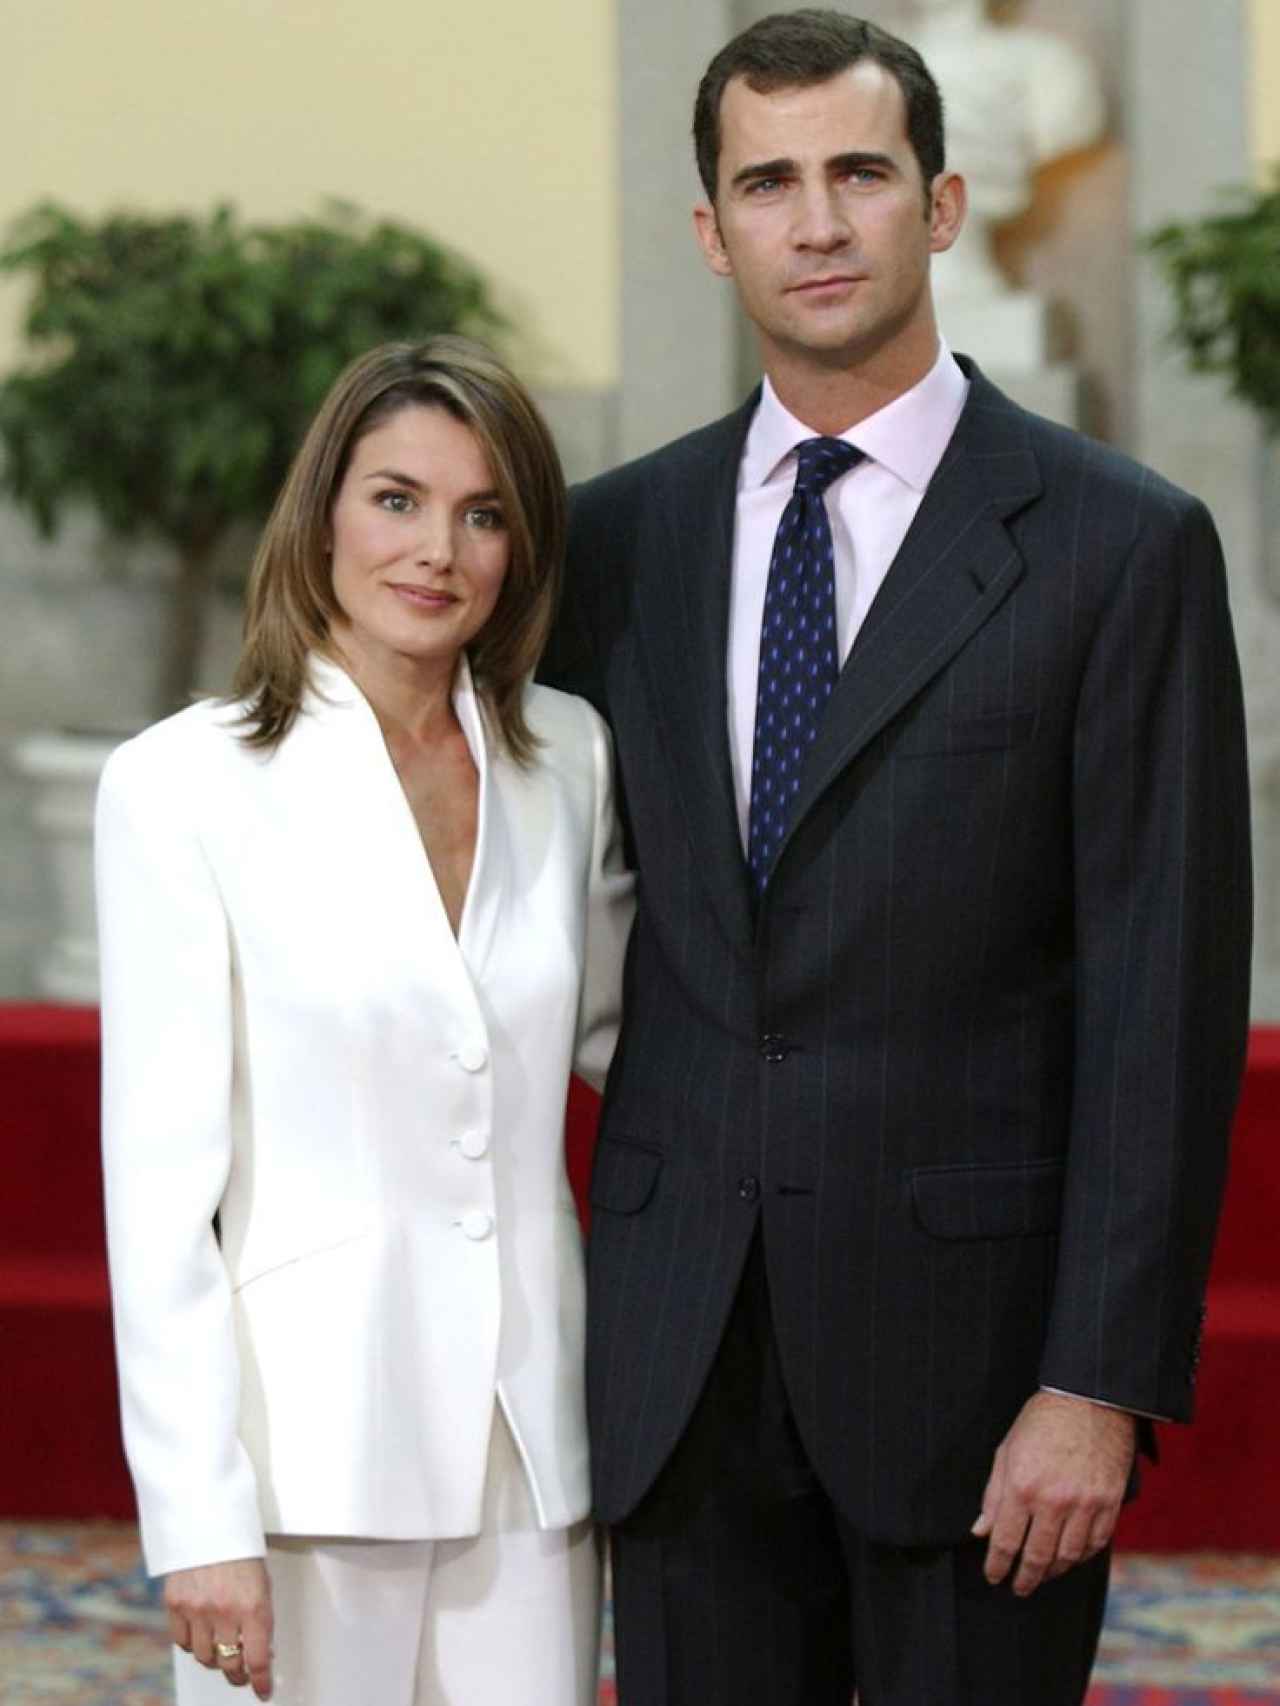 Pedida de mano de Felipe VI y Letizia en 2003.